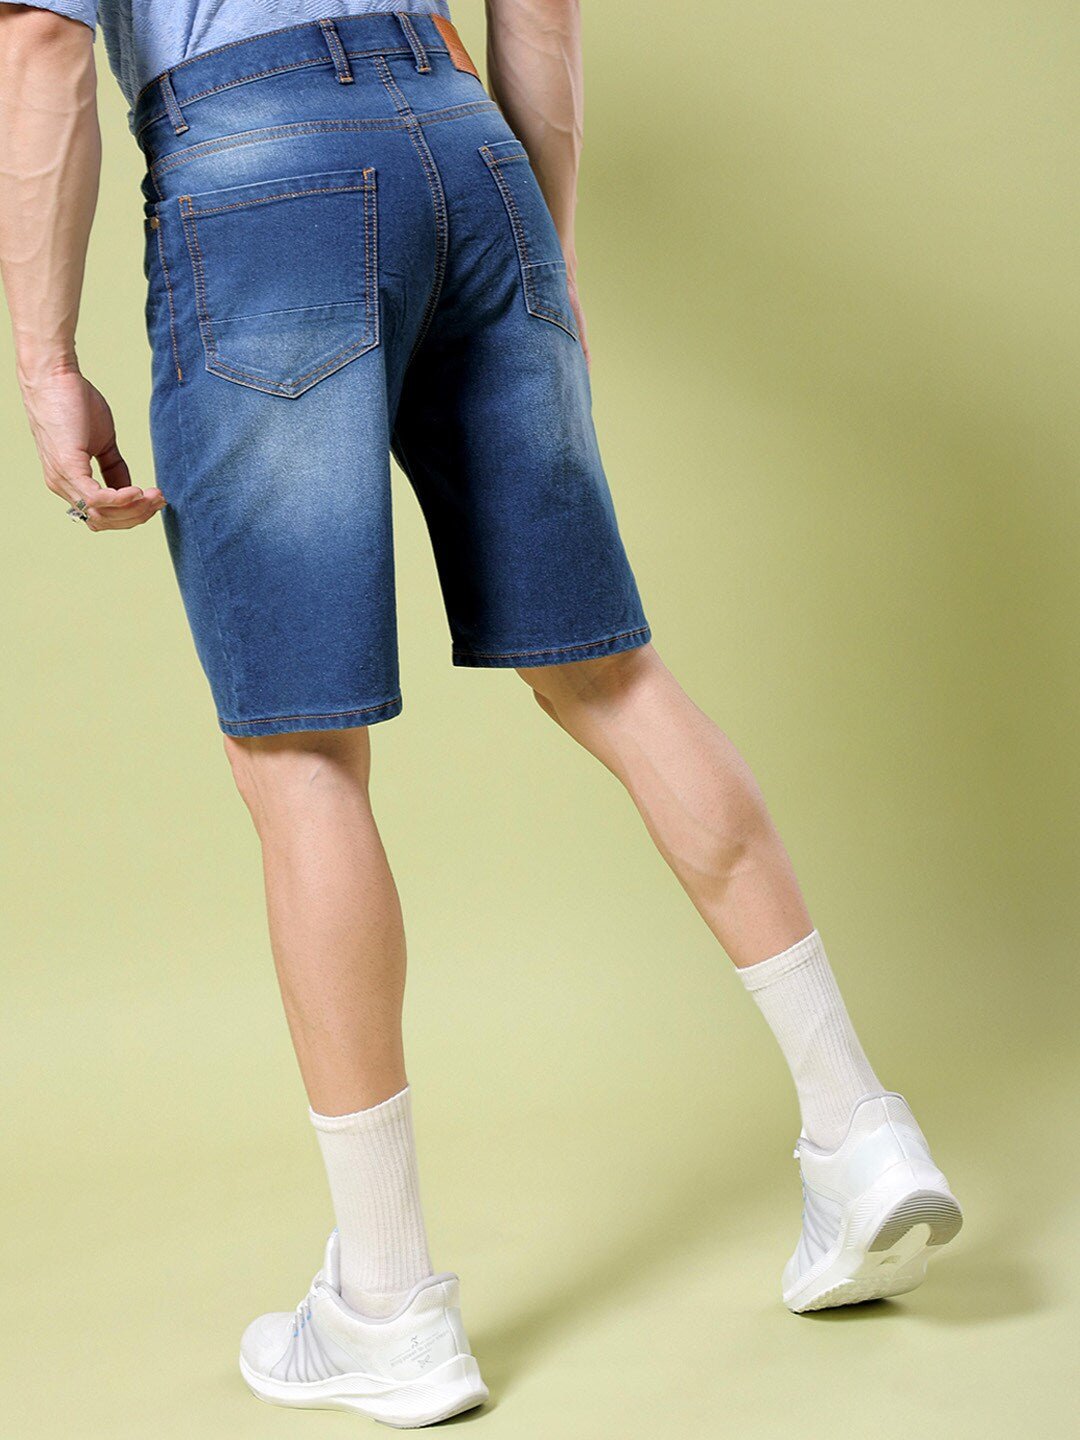 Shop Men Washed Shorts Online.